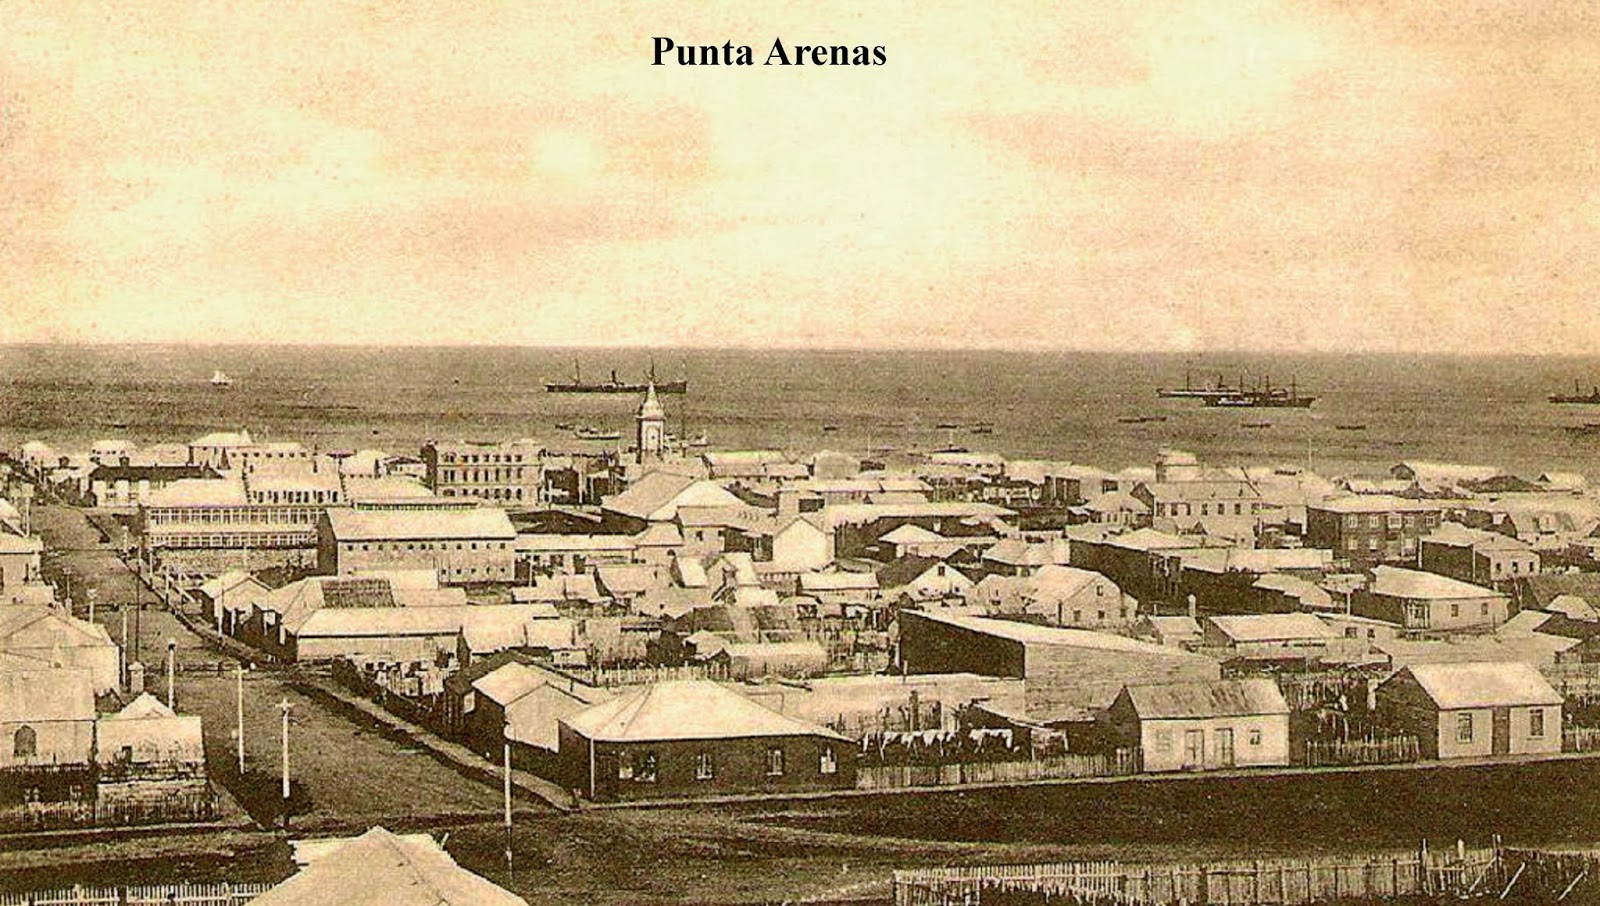 18 de diciembre de 1848: la fecha de creación de la ciudad de Punta Arenas